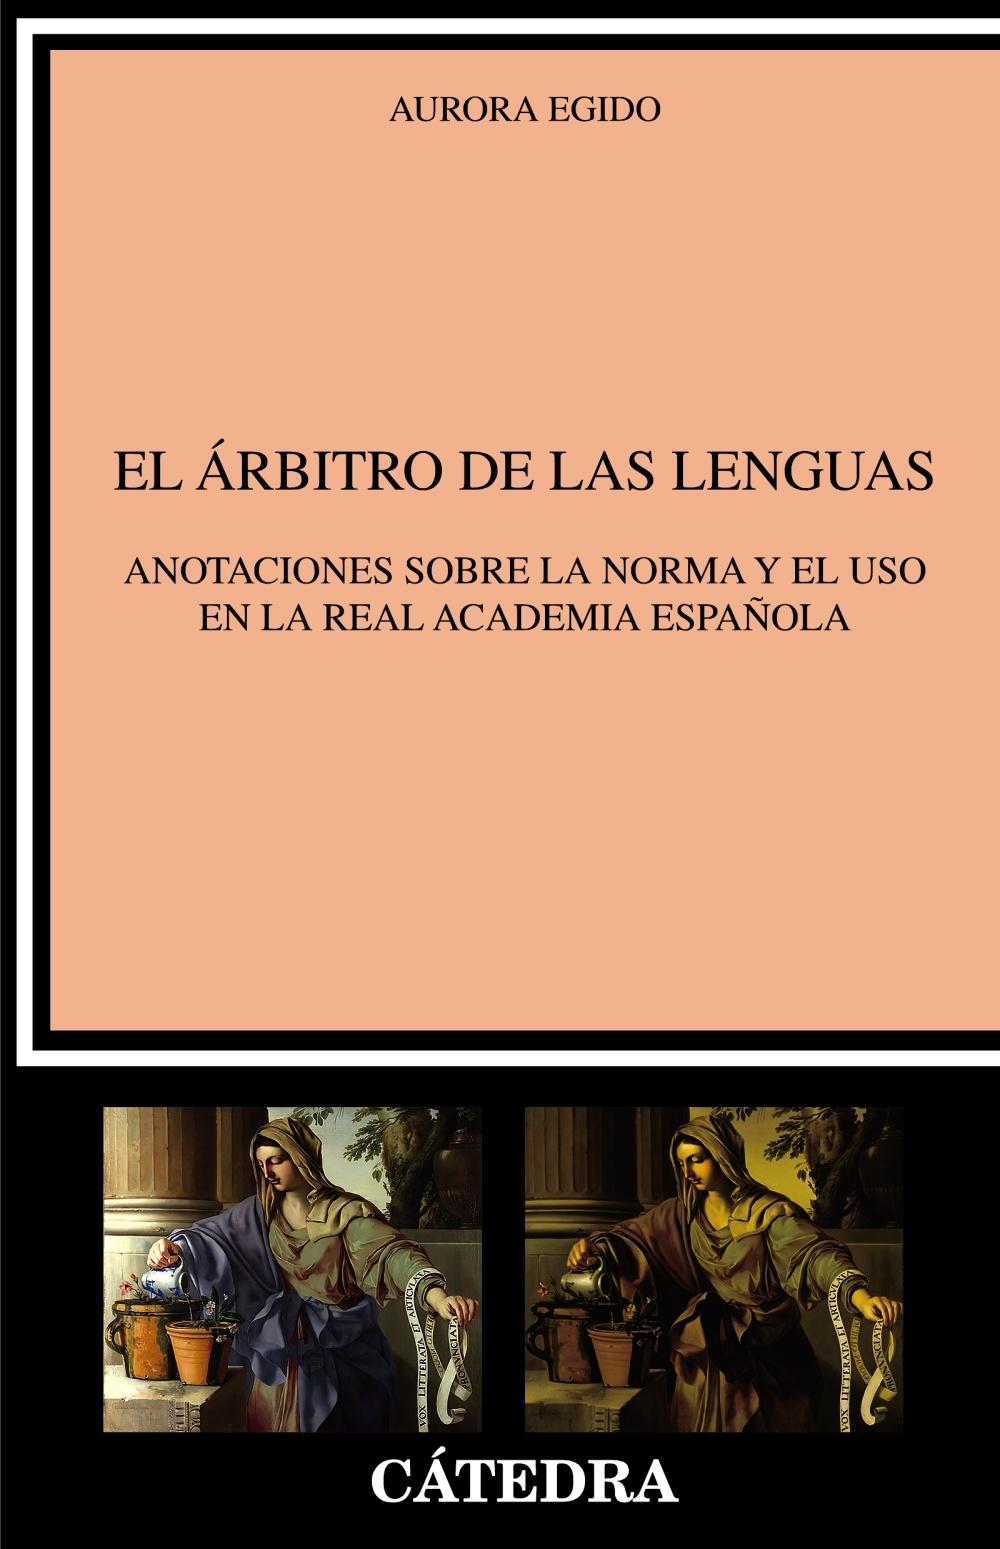 El árbitro de las lenguas "Anotaciones sobre la norma y el uso en la Real Academia Española"